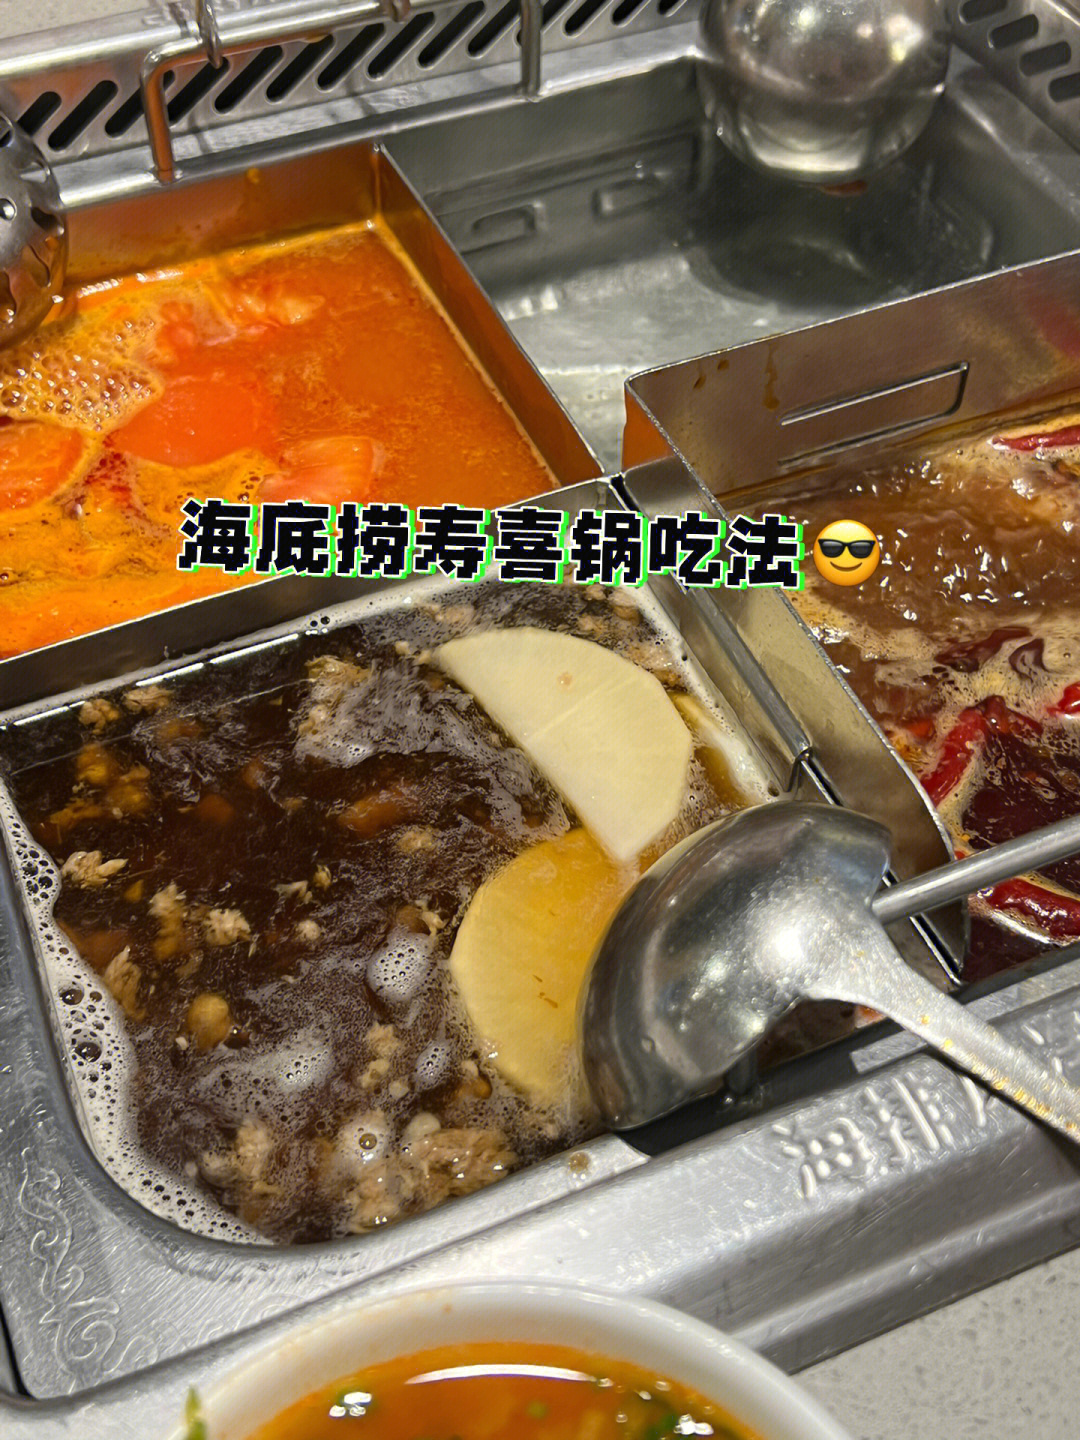 海底捞寿喜锅锅底图片